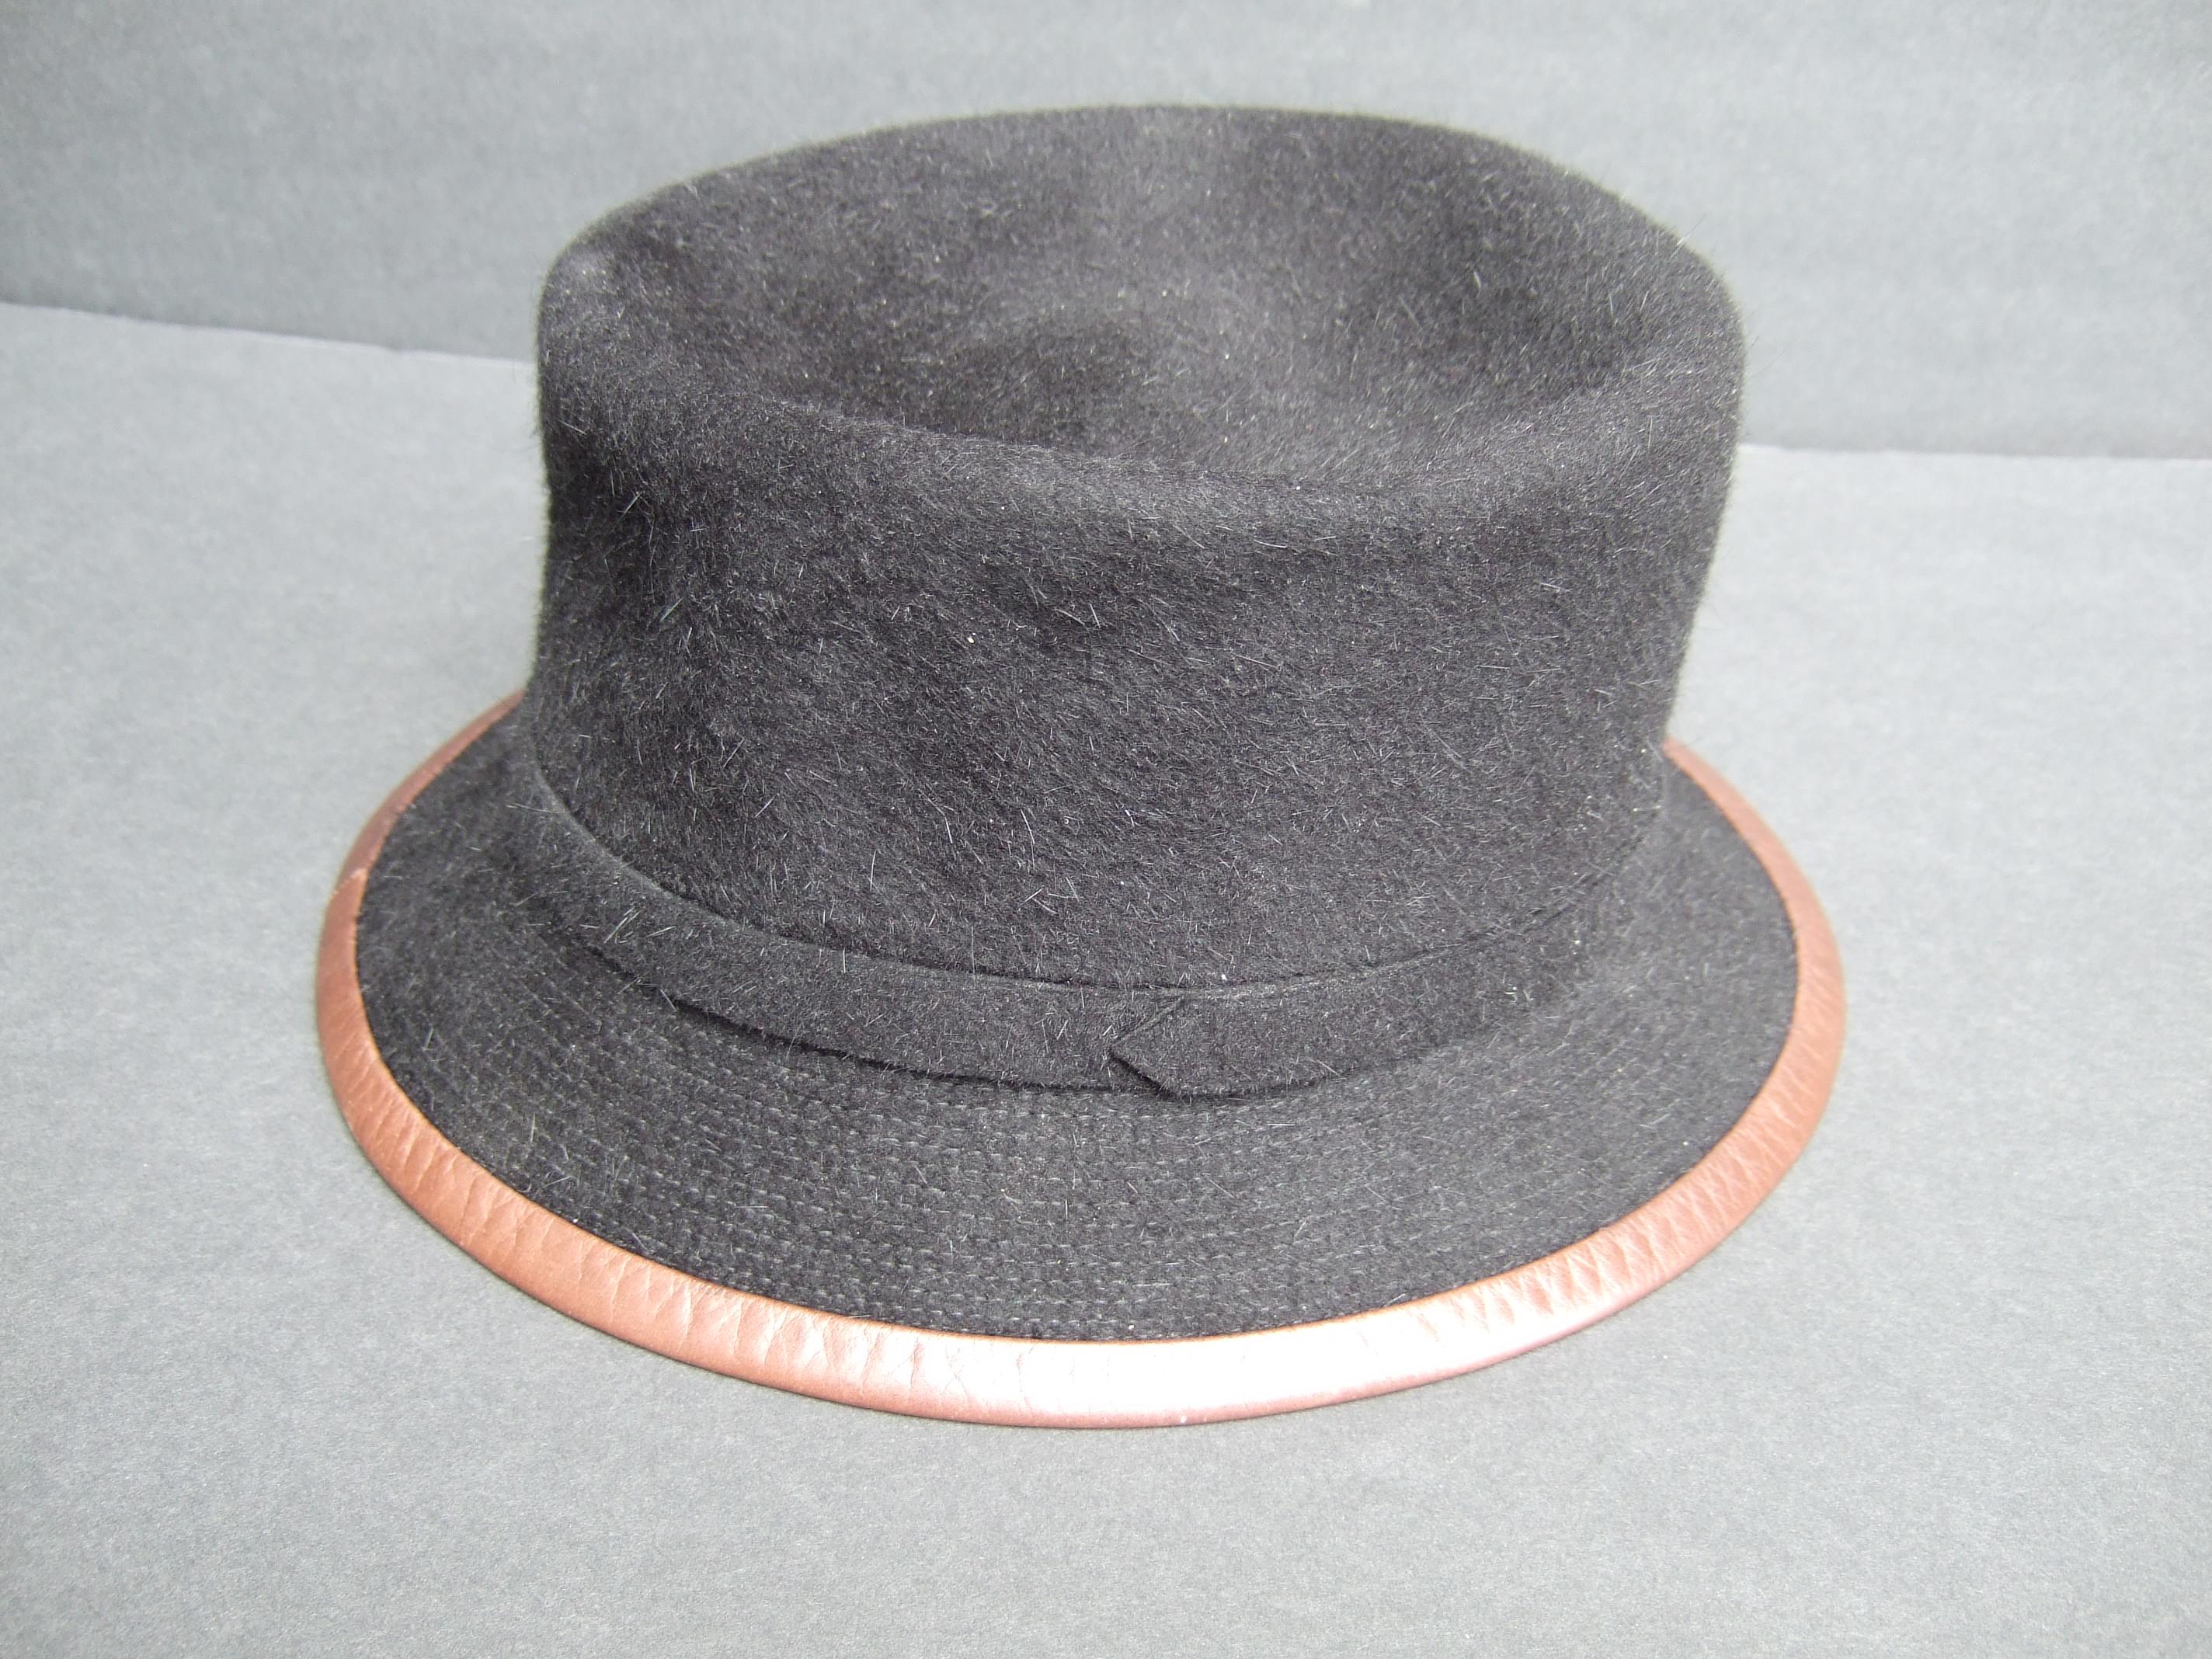 Hermes Paris Black Wool Leather Trim Hat Labeled Motsch Chapeaux Pour Hermes  For Sale 7